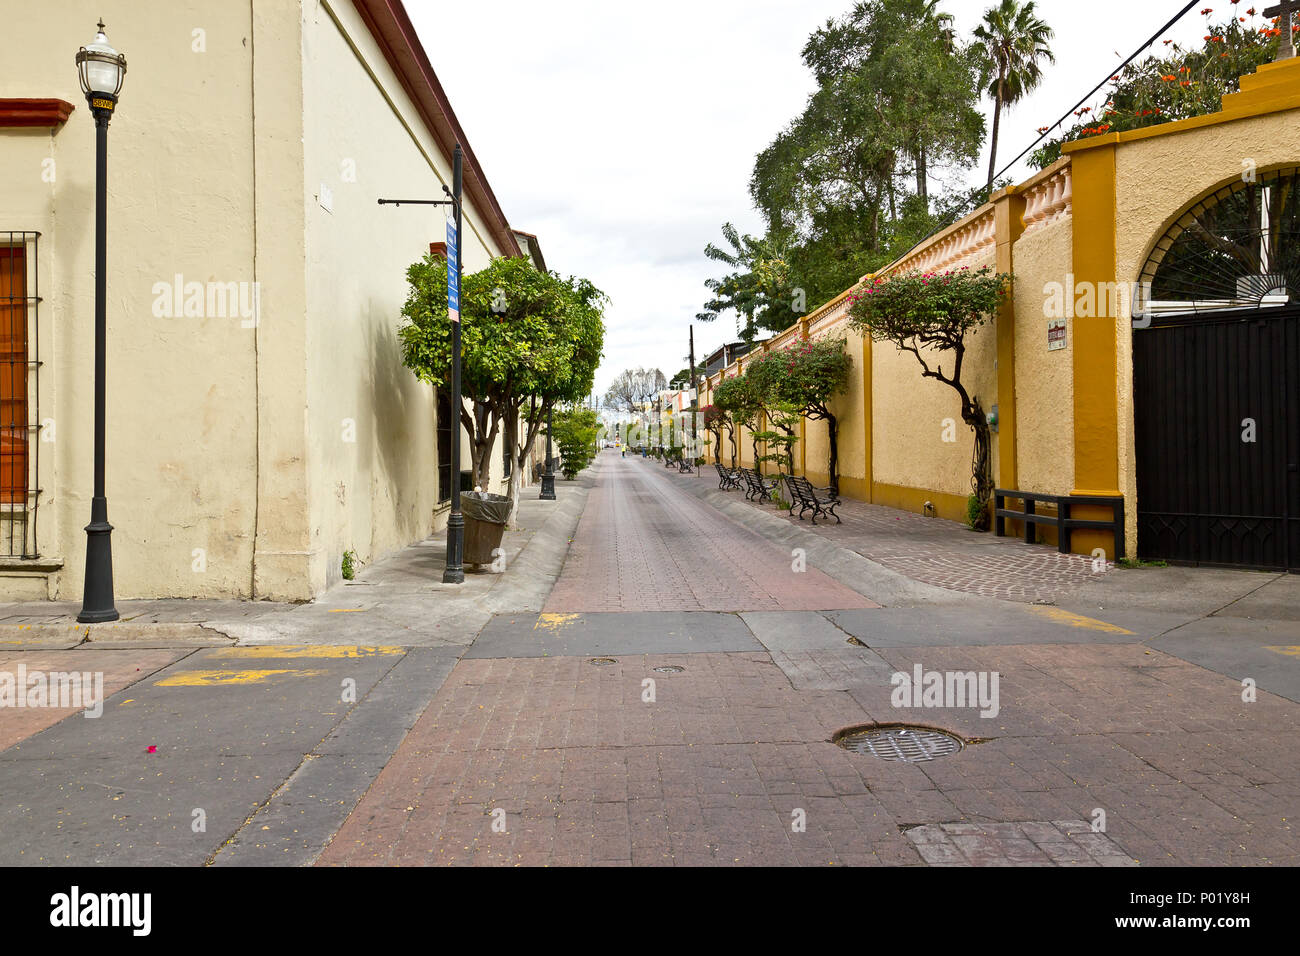 Street in Guadalajara, Mexico Stock Photo